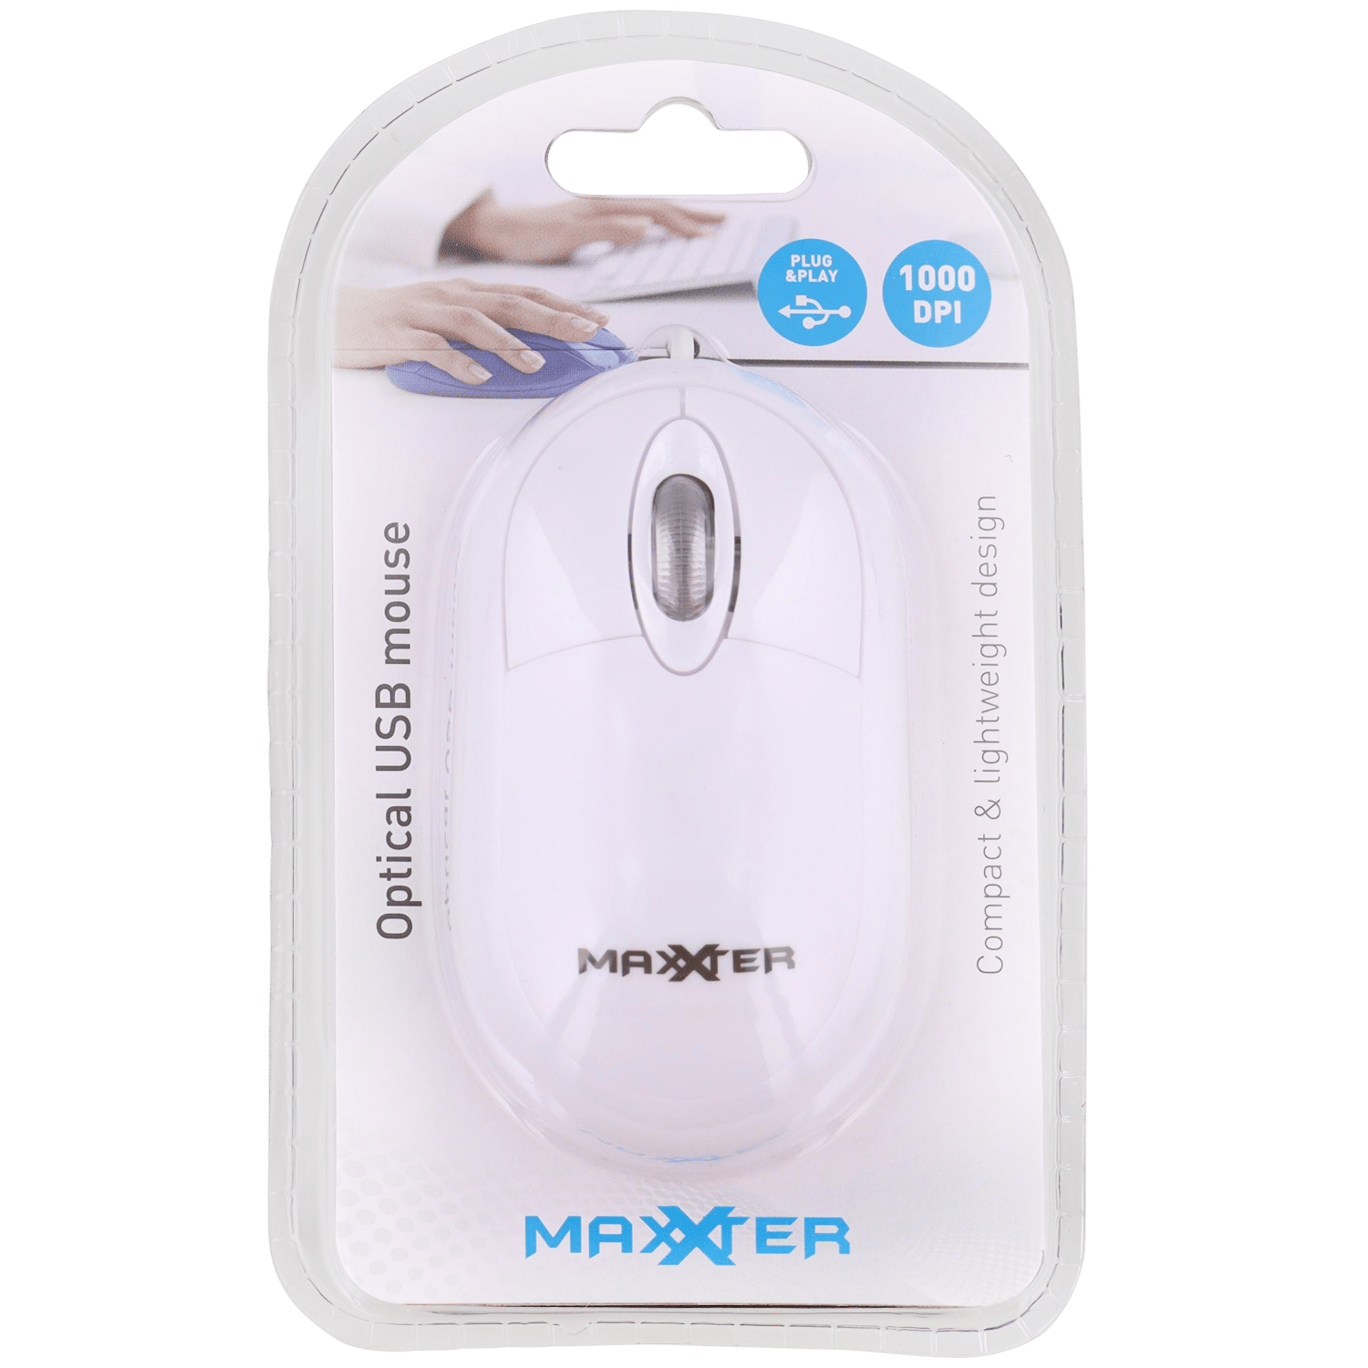 consensus Voorkeur Inzet Maxxter optische USB-muis | Action.com